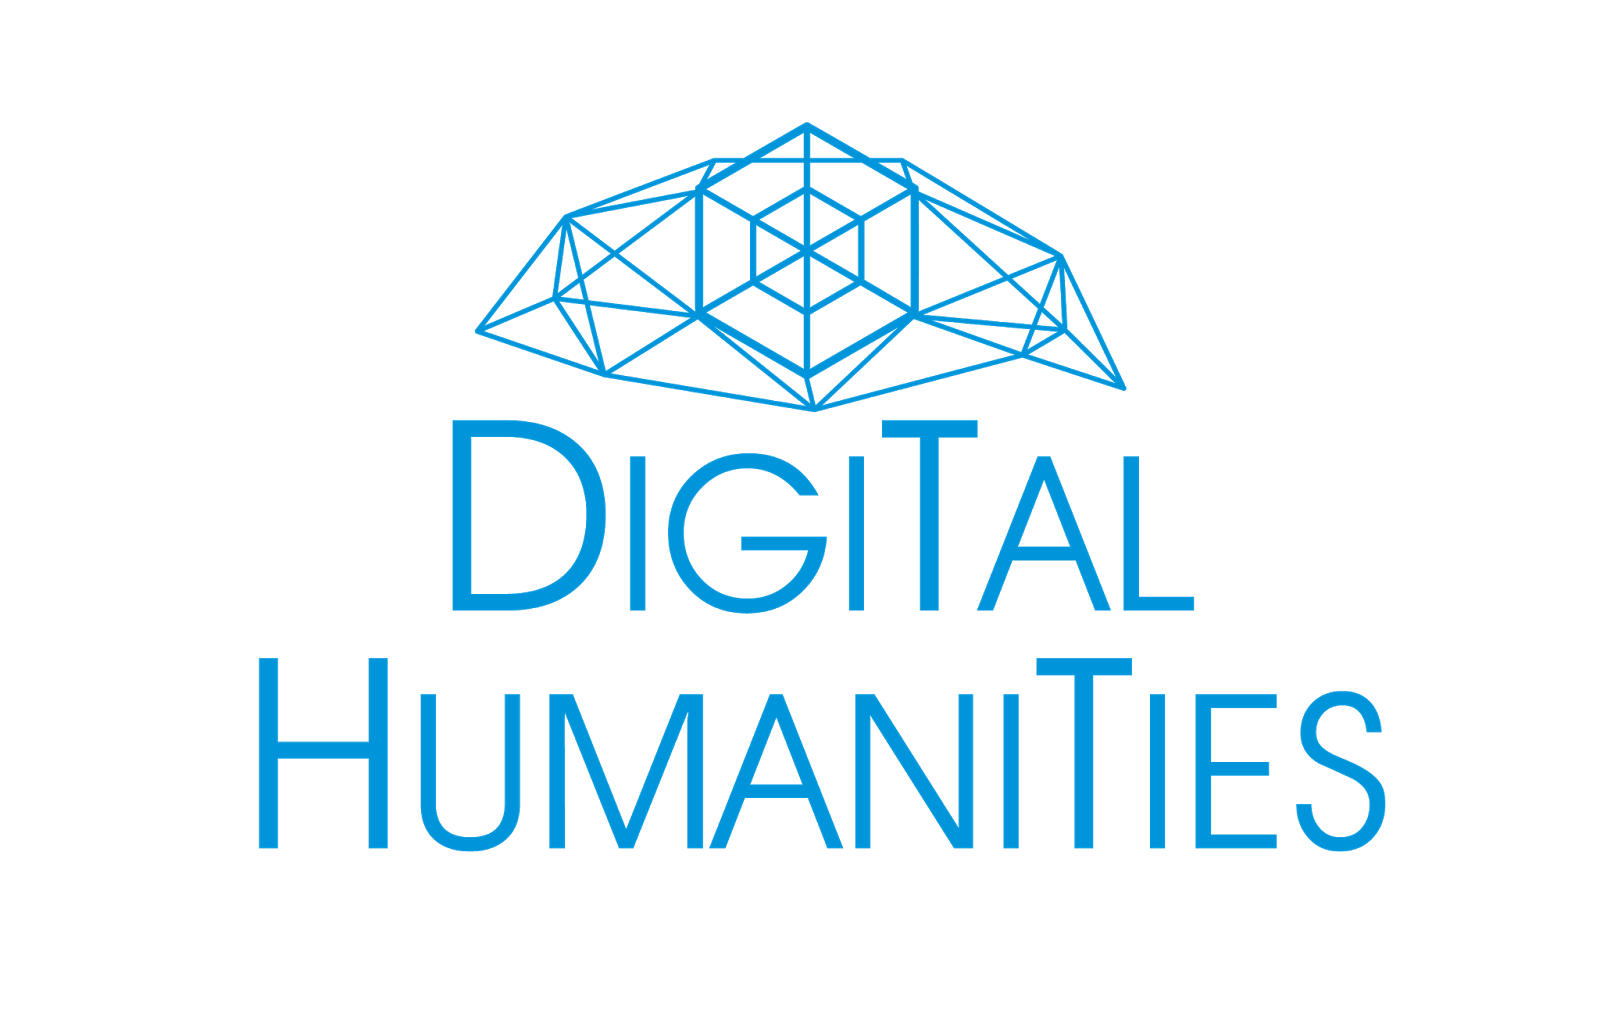 Цифровая гуманитаристика